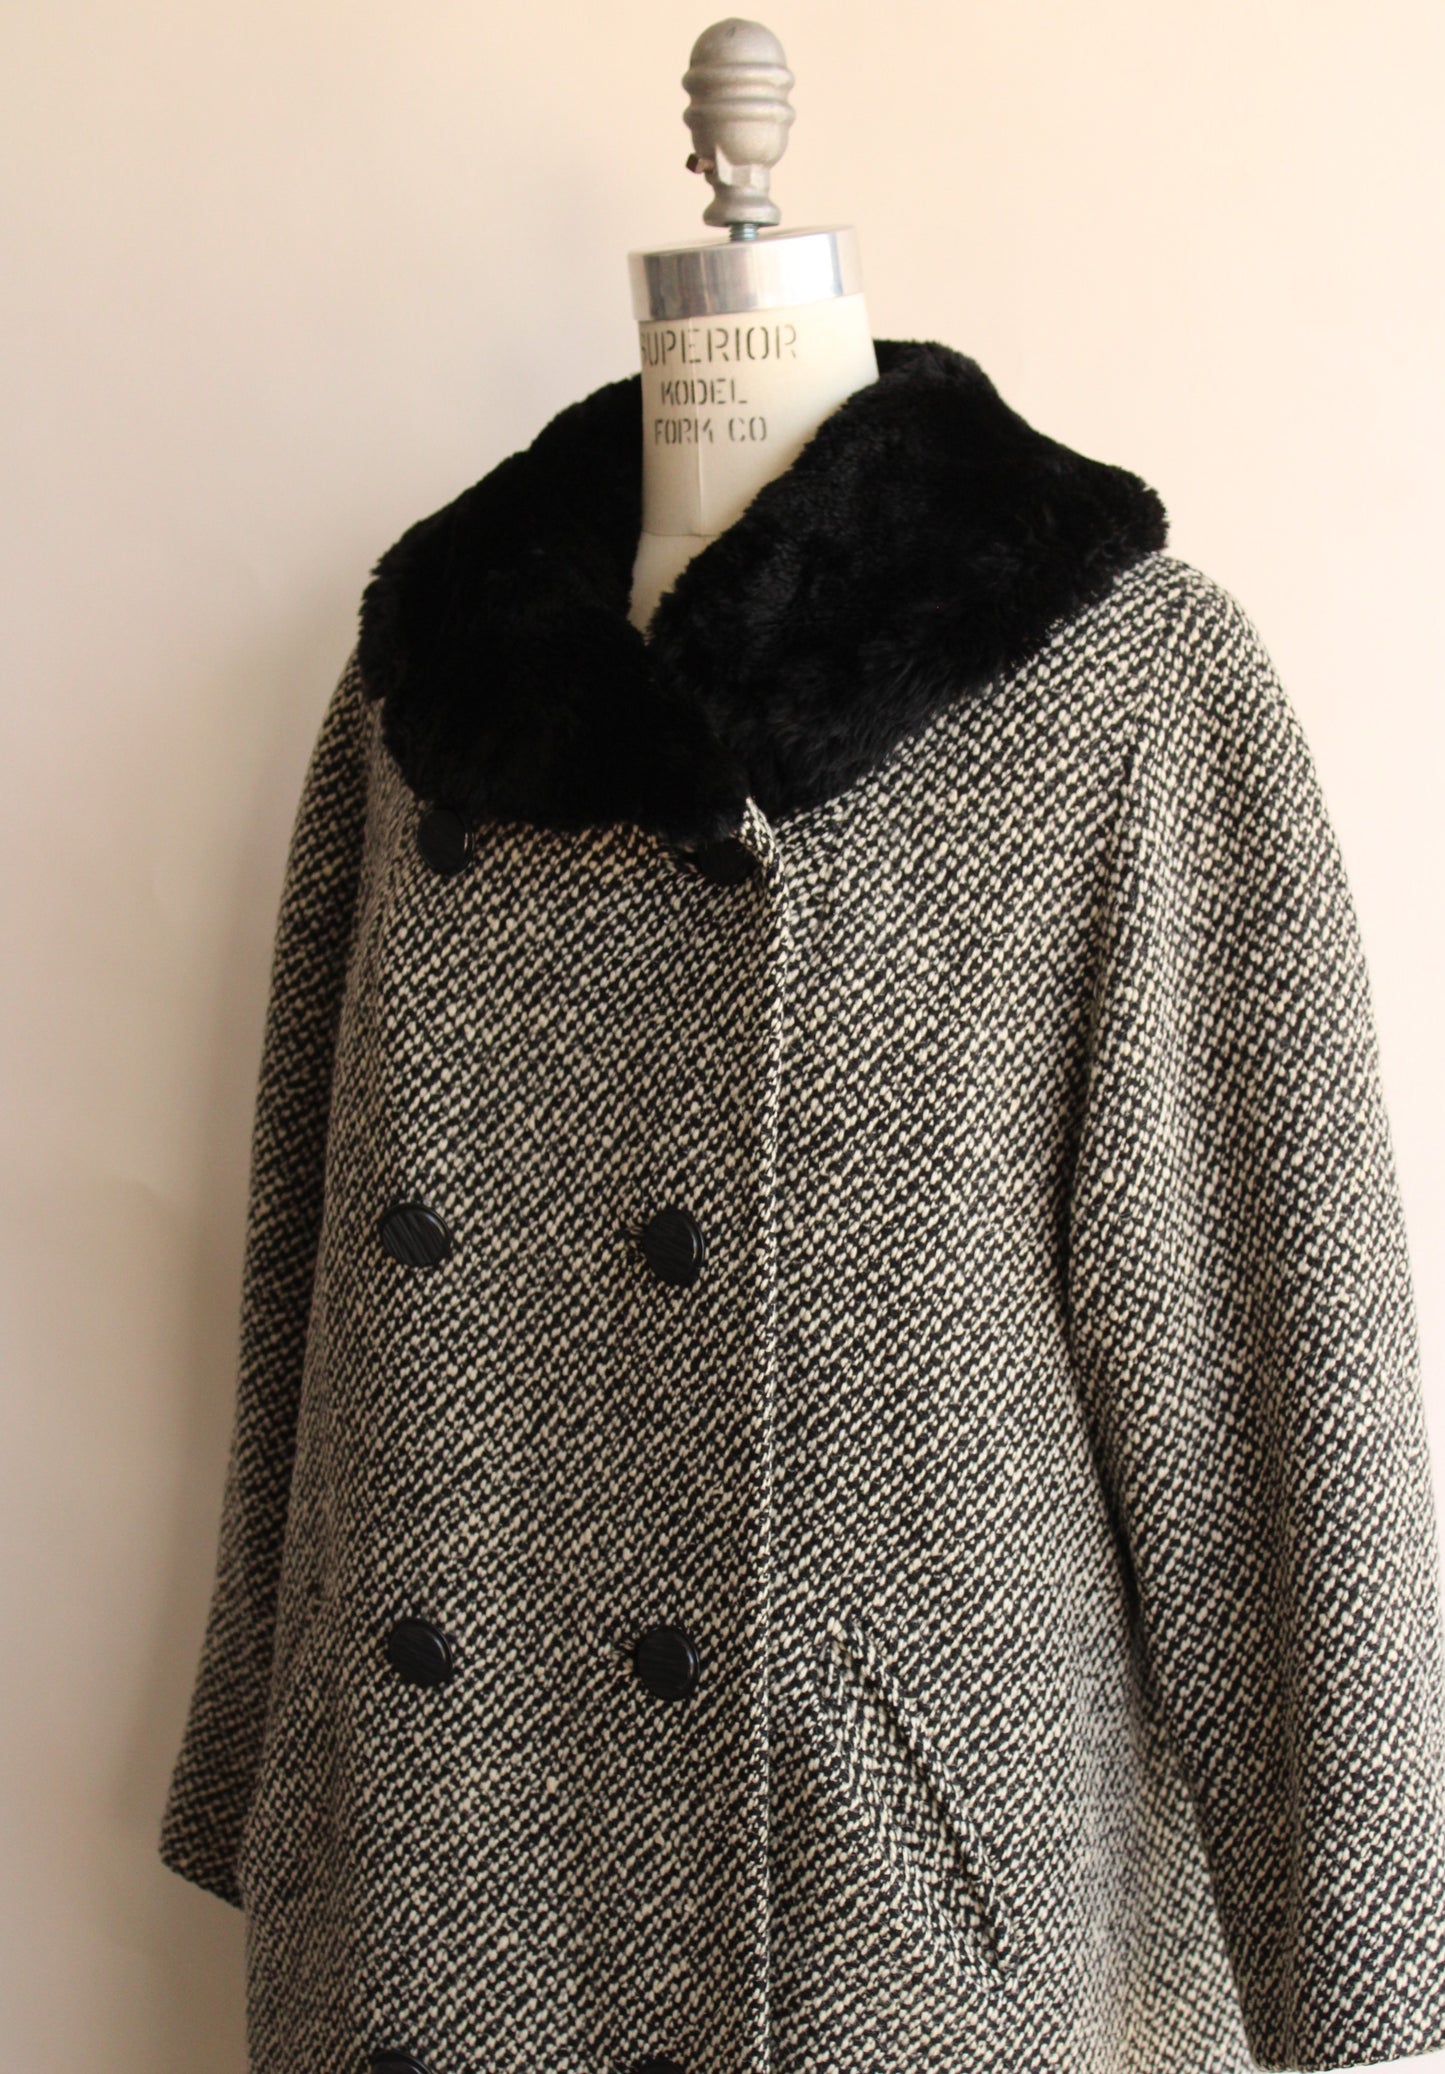 Vintage 1950s Bergdorf Goodman Black and White Tweed Wool Overcoat Wit ...